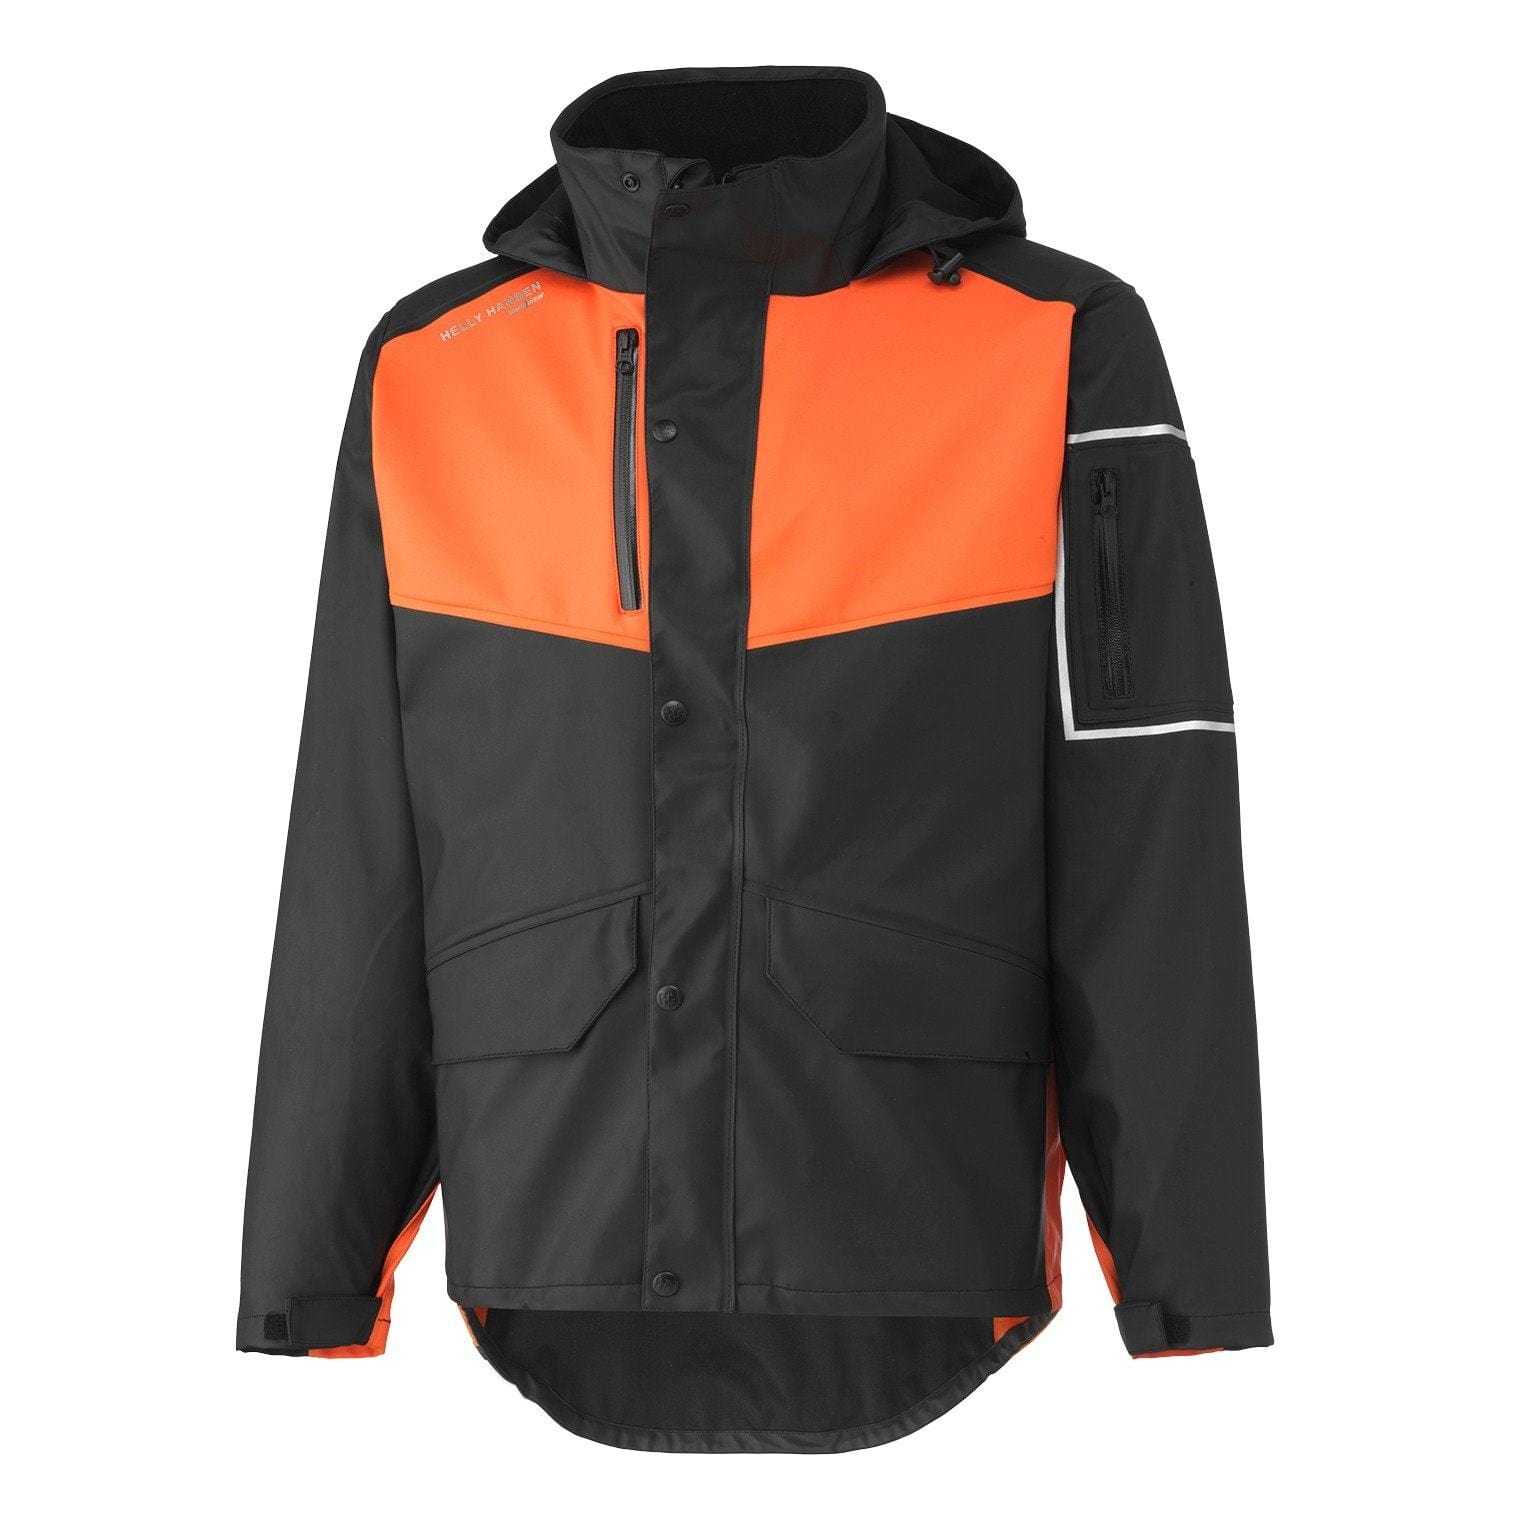 Helly Hansen Workwear Outerwear S / Black/Dark Orange Helly Hansen Workwear - Men's West Coast Work Jacket